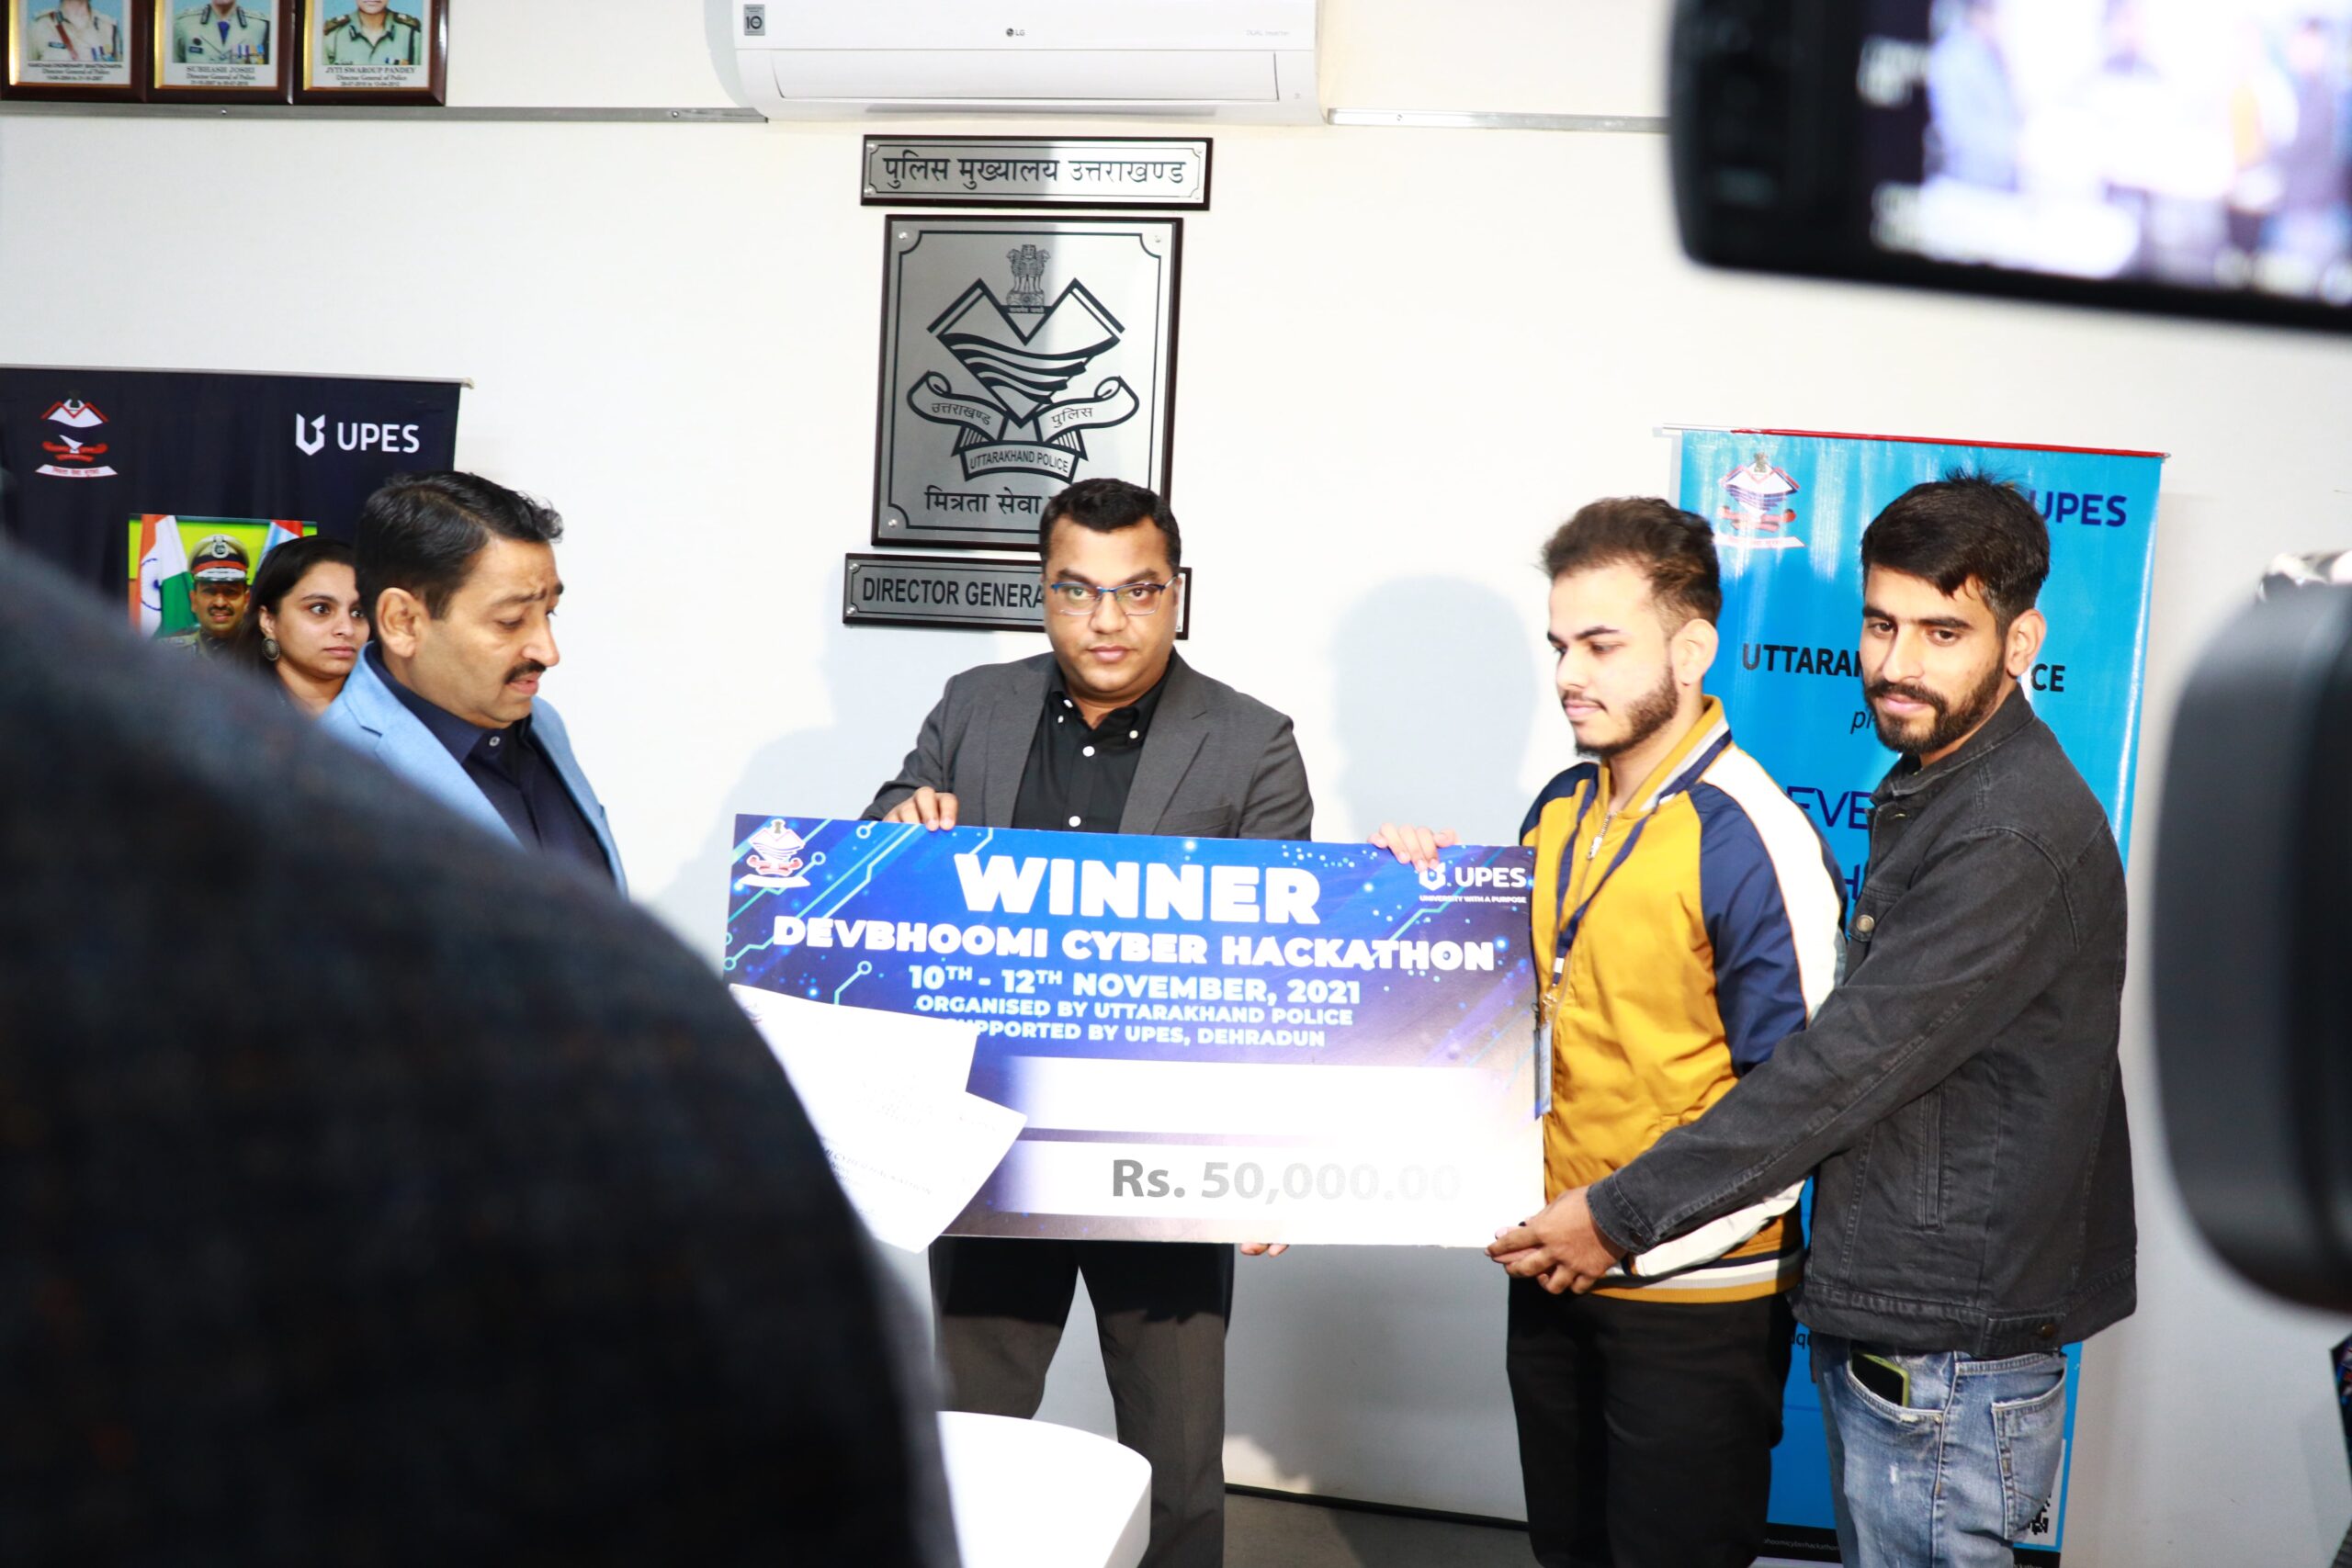 Devbhoomi Cyber Hackathon Winners